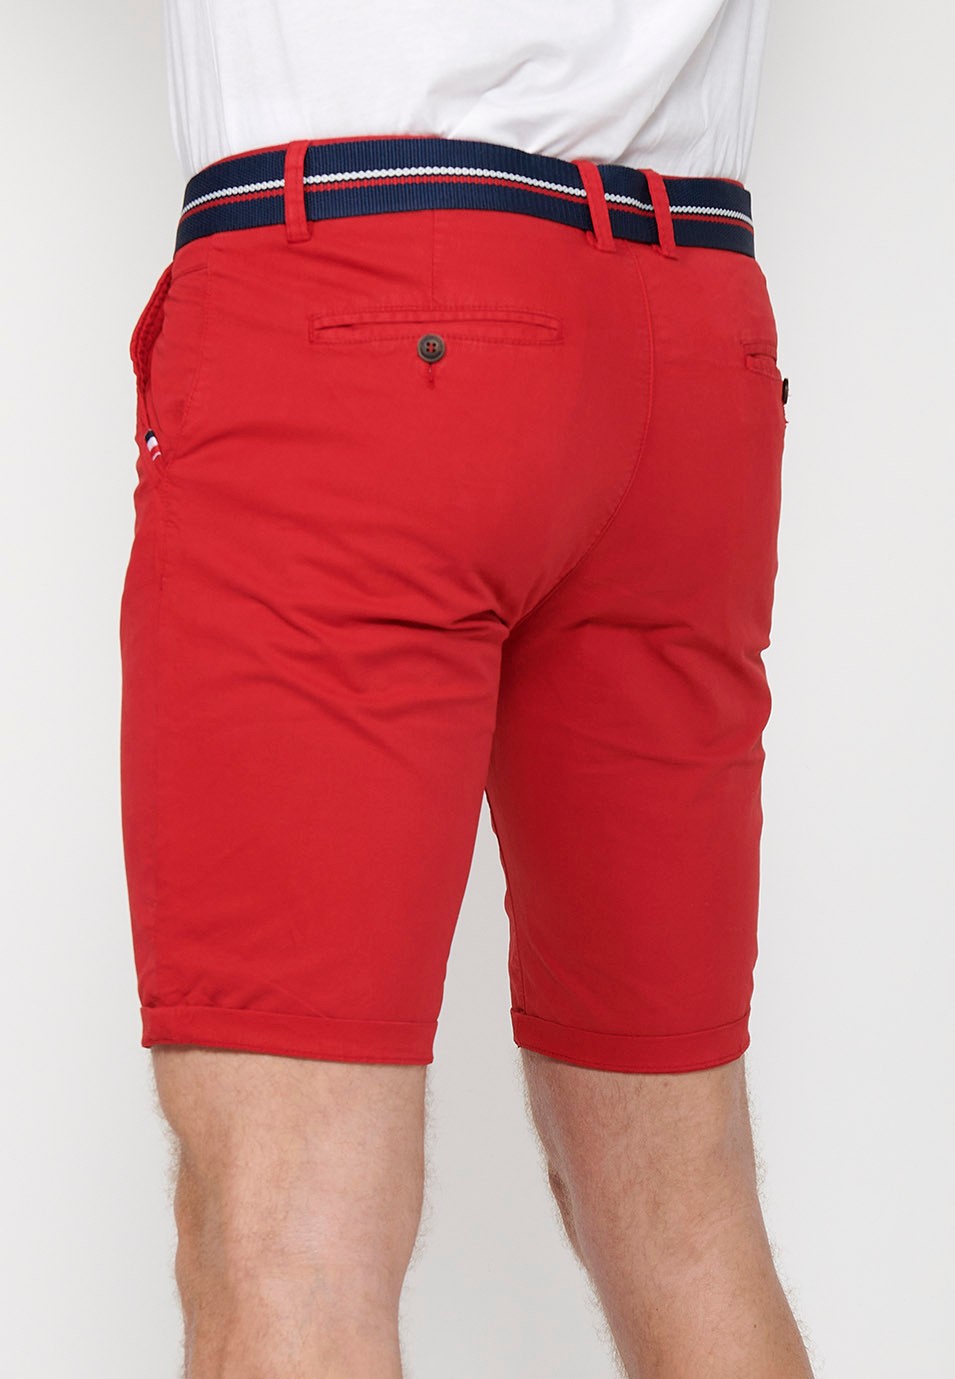 Pantalons curts acabats en volta amb Tancament davanter amb cremallera i botó i cinturó de Color Roig per a Home 6